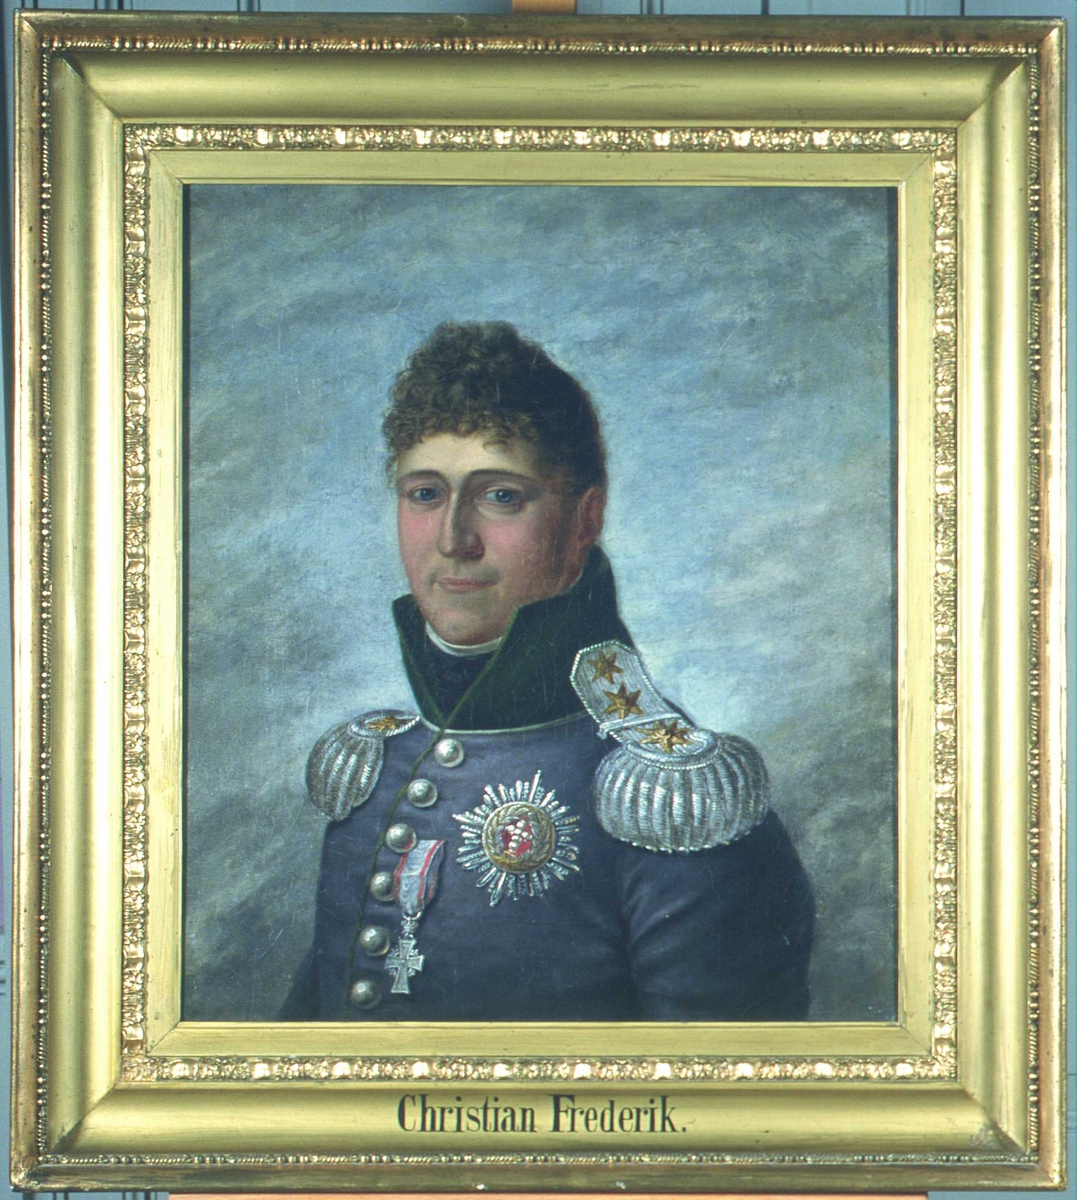 Portrett av prins Christian Frederik. Grå uniform (dvs. norsk uniform) m/grønn krave, 6 knapper, sølv epåletter, 2 ordener, 3 stjerner på høyre skulder. 